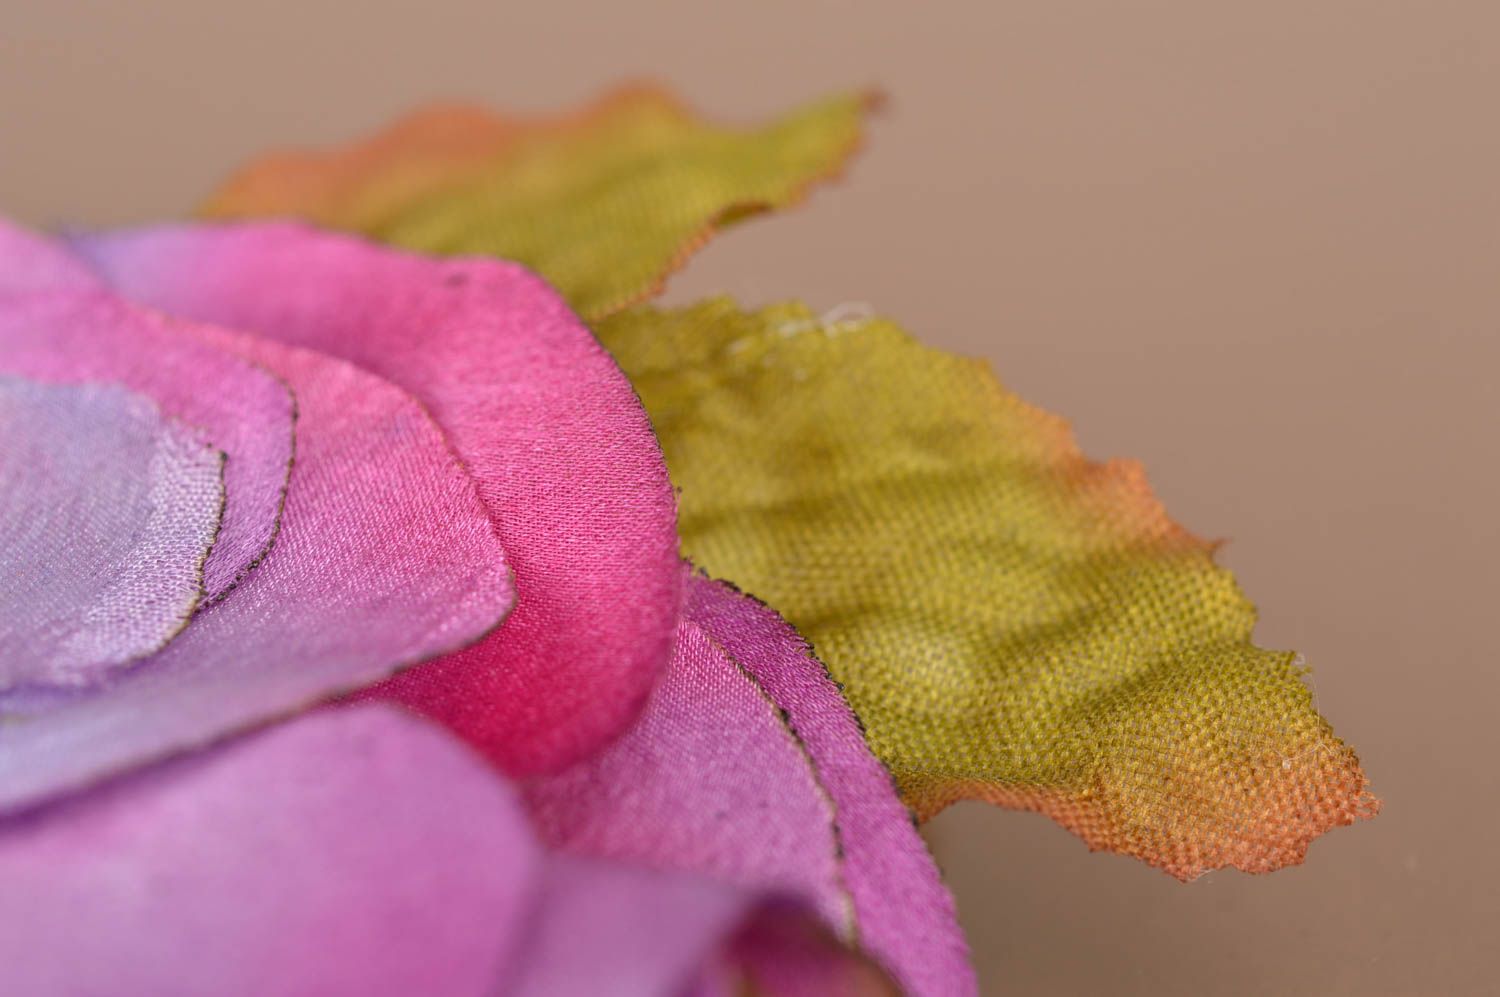 Брошь цветок из ткани сиреневая со стразом красивая крупная ручной работы фото 4